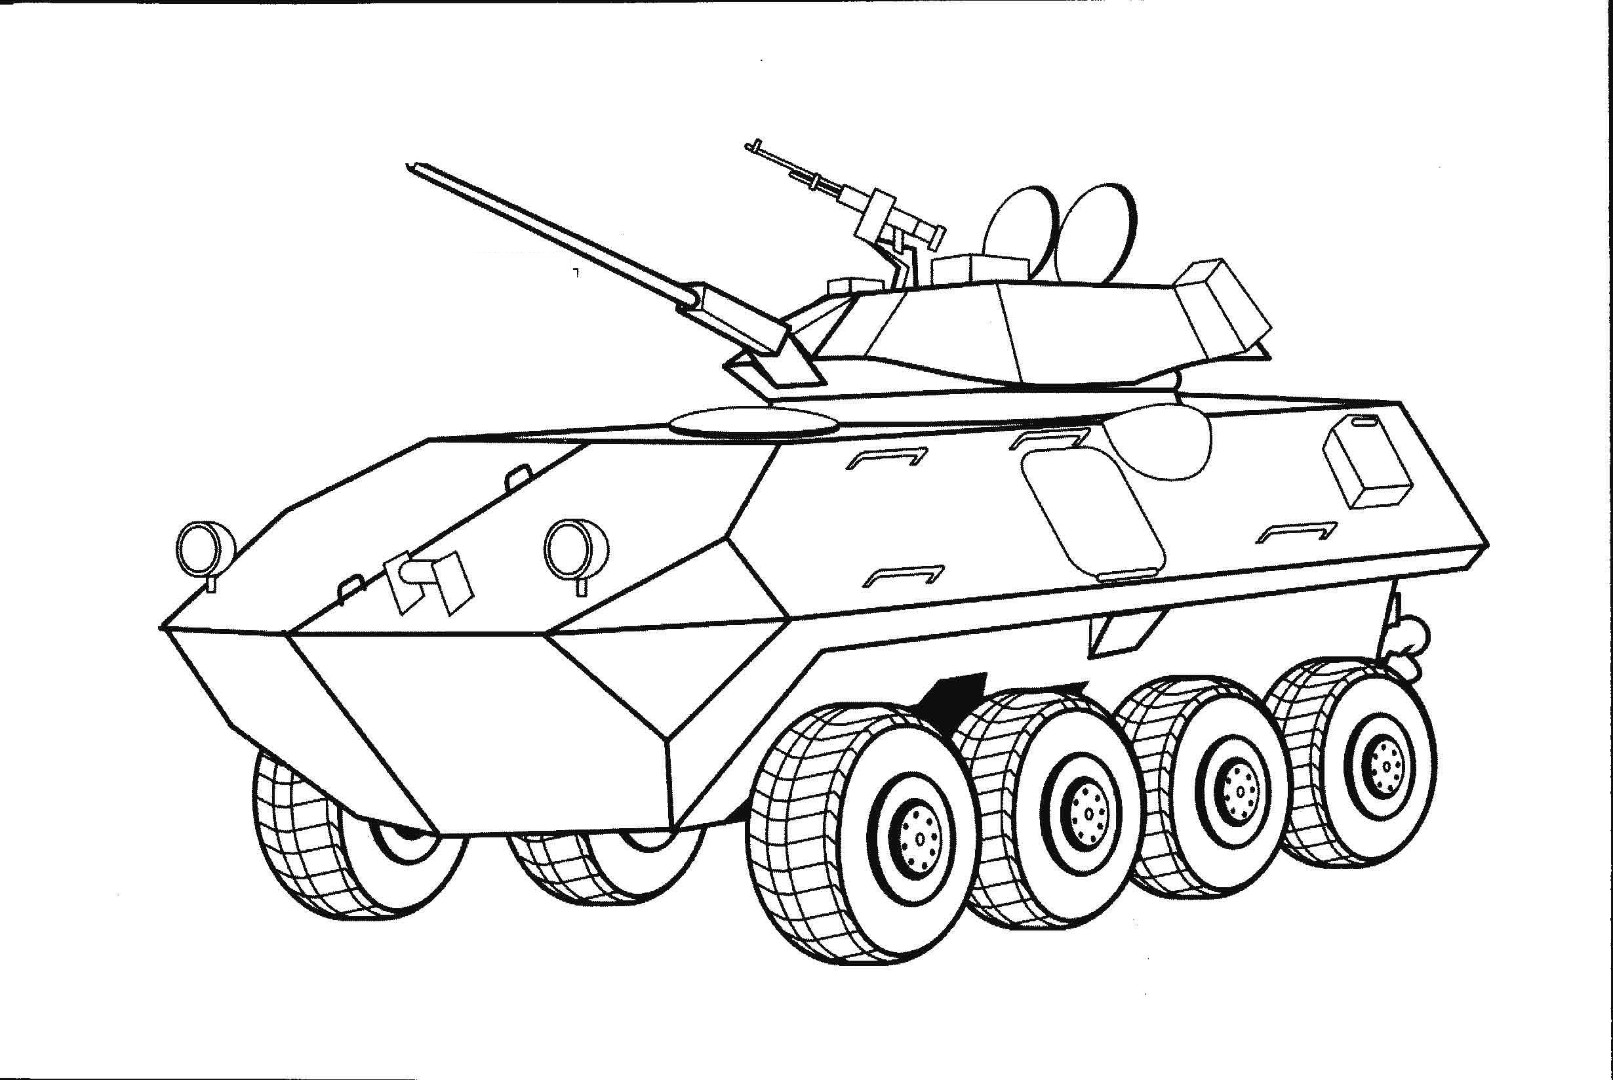 Раскраски танки БТР Военная техника